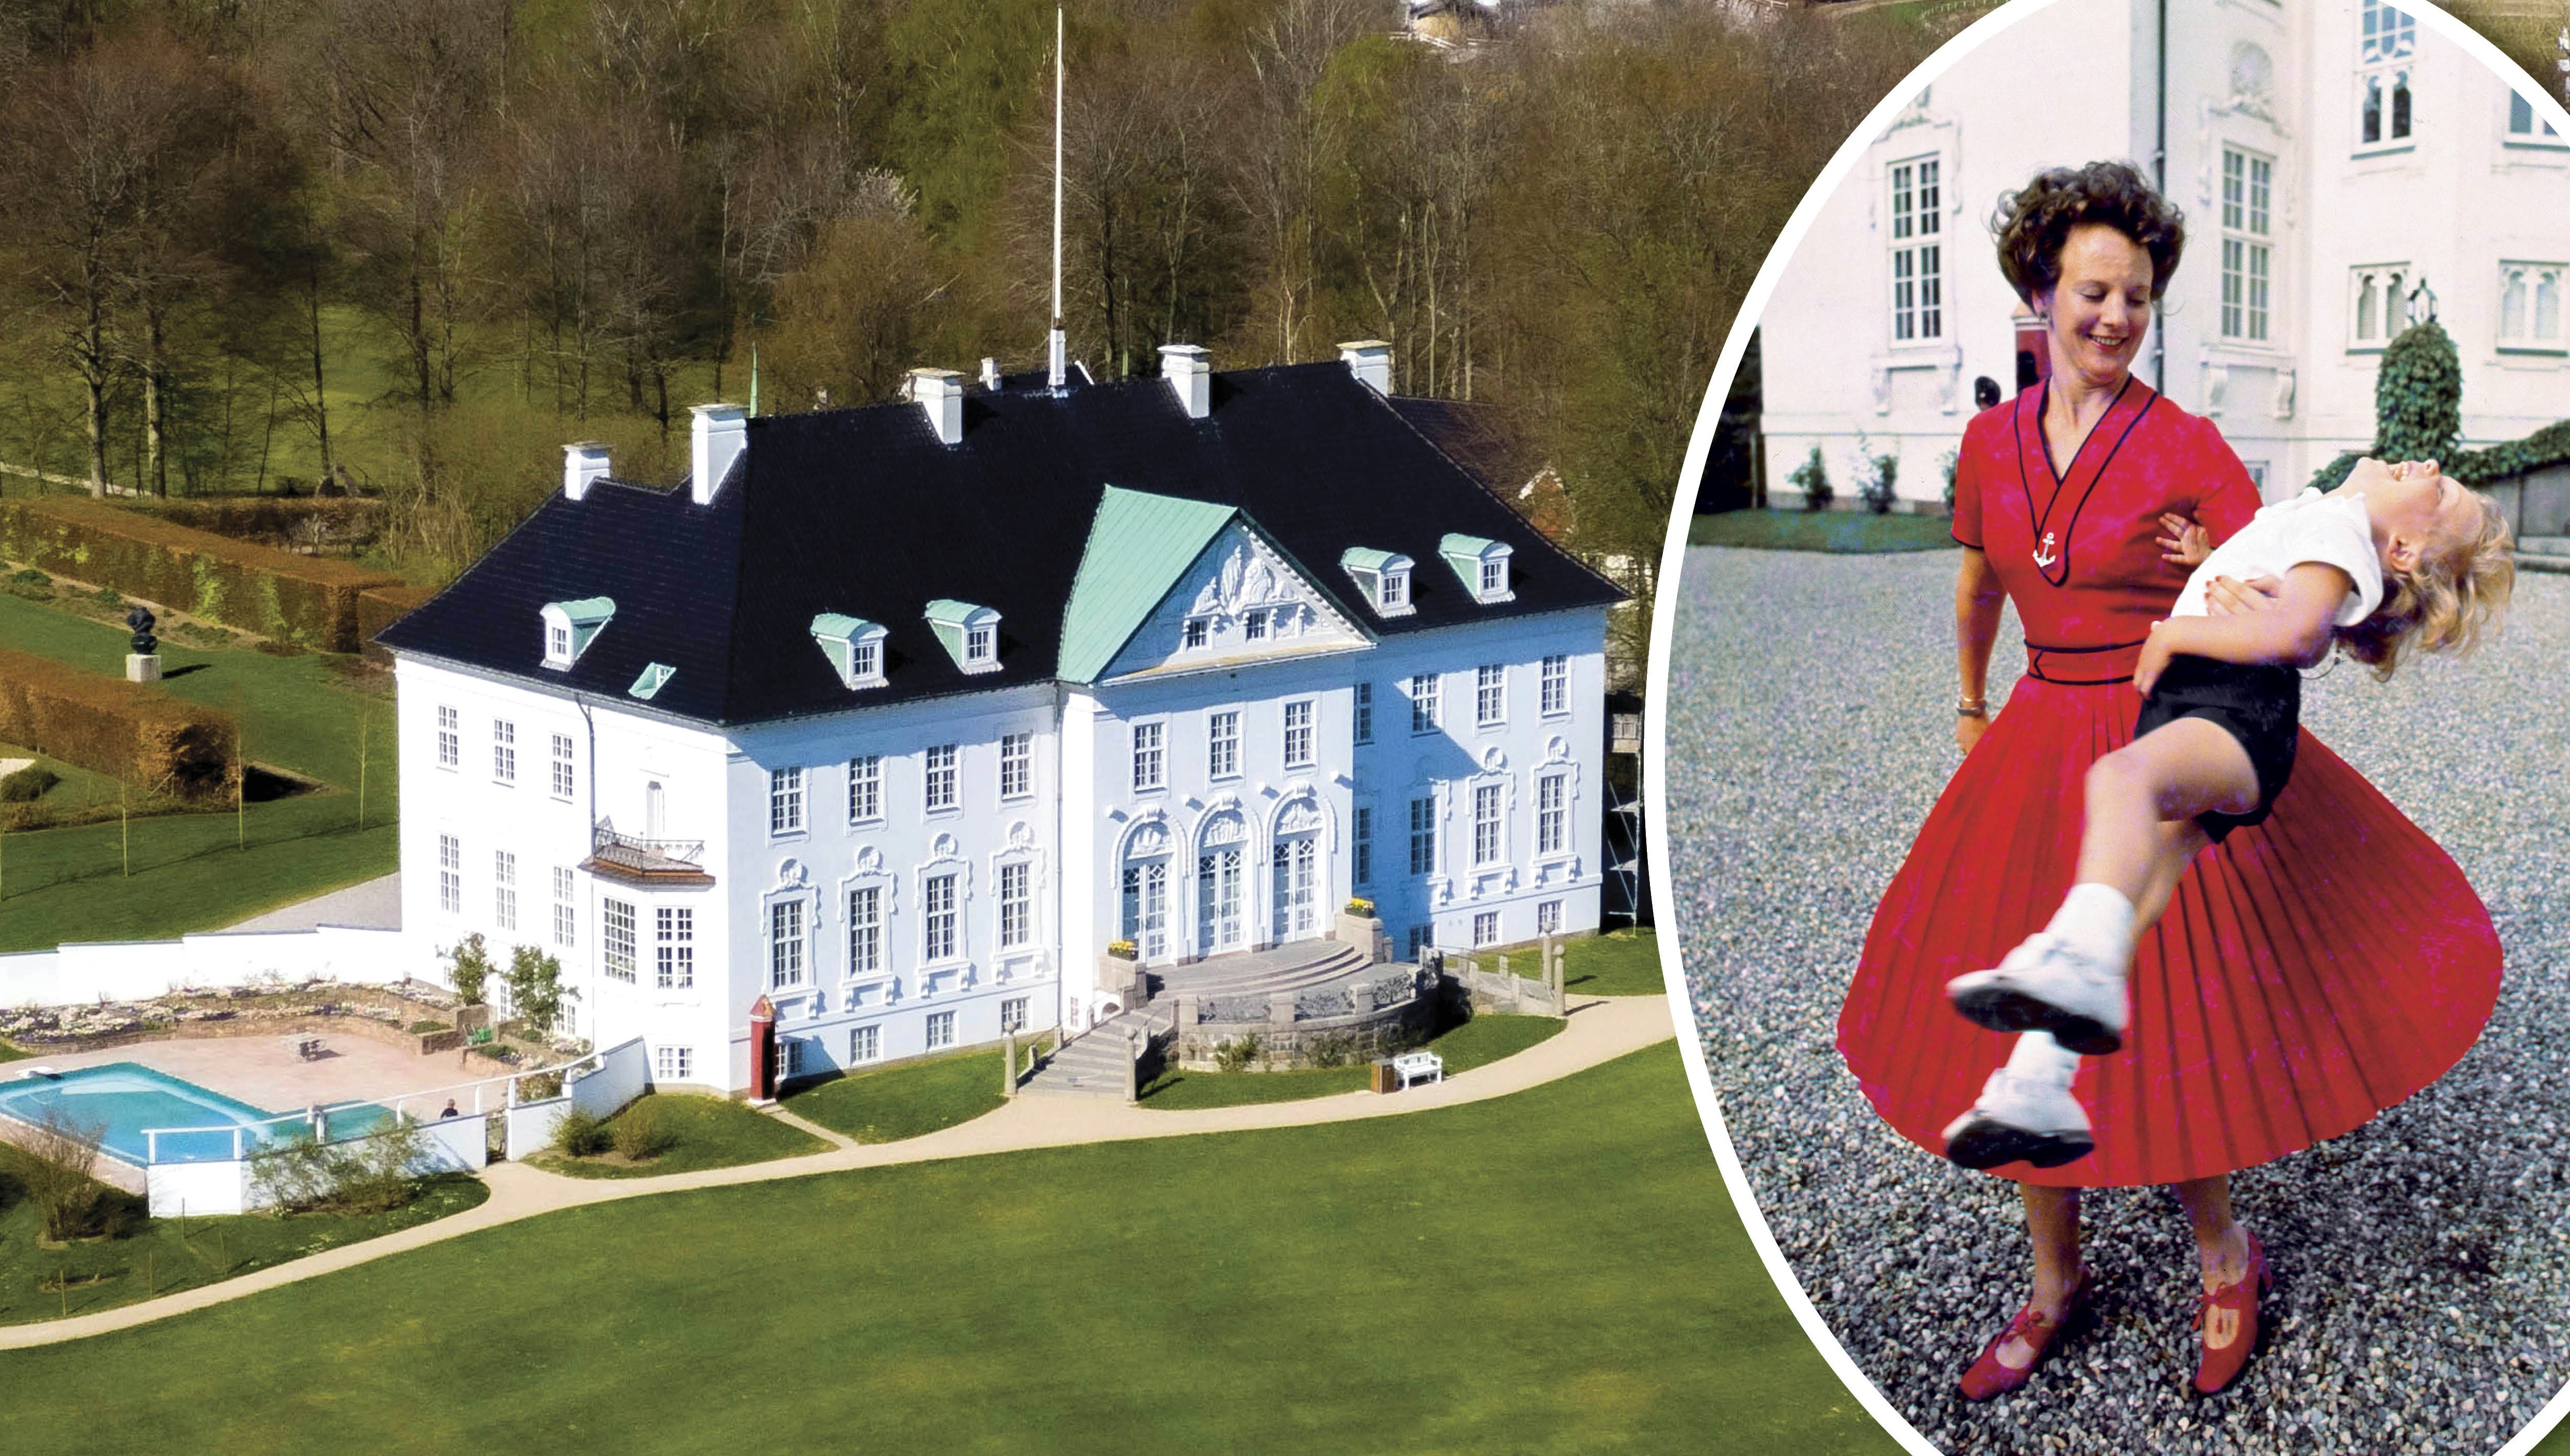 Marselisborg Slot ved Aarhus. Indsat: Dronning Margrethe give lille prins Joachim en sjov svingtur ved slottet i 1970'erne.&nbsp;